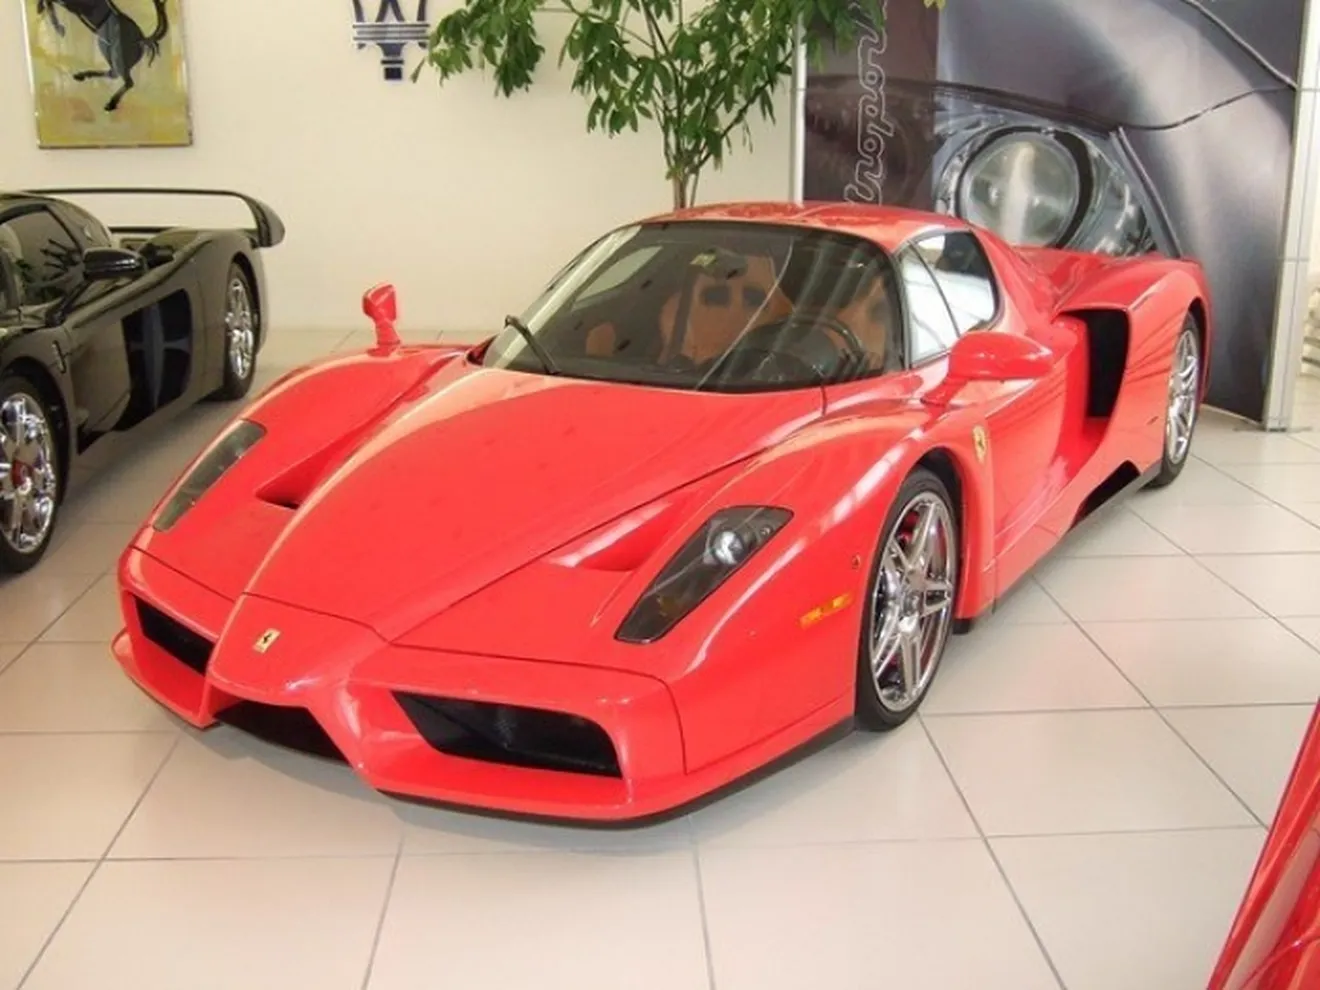 El Ferrari Enzo de Michael Schumacher esta a la venta... o eso parece